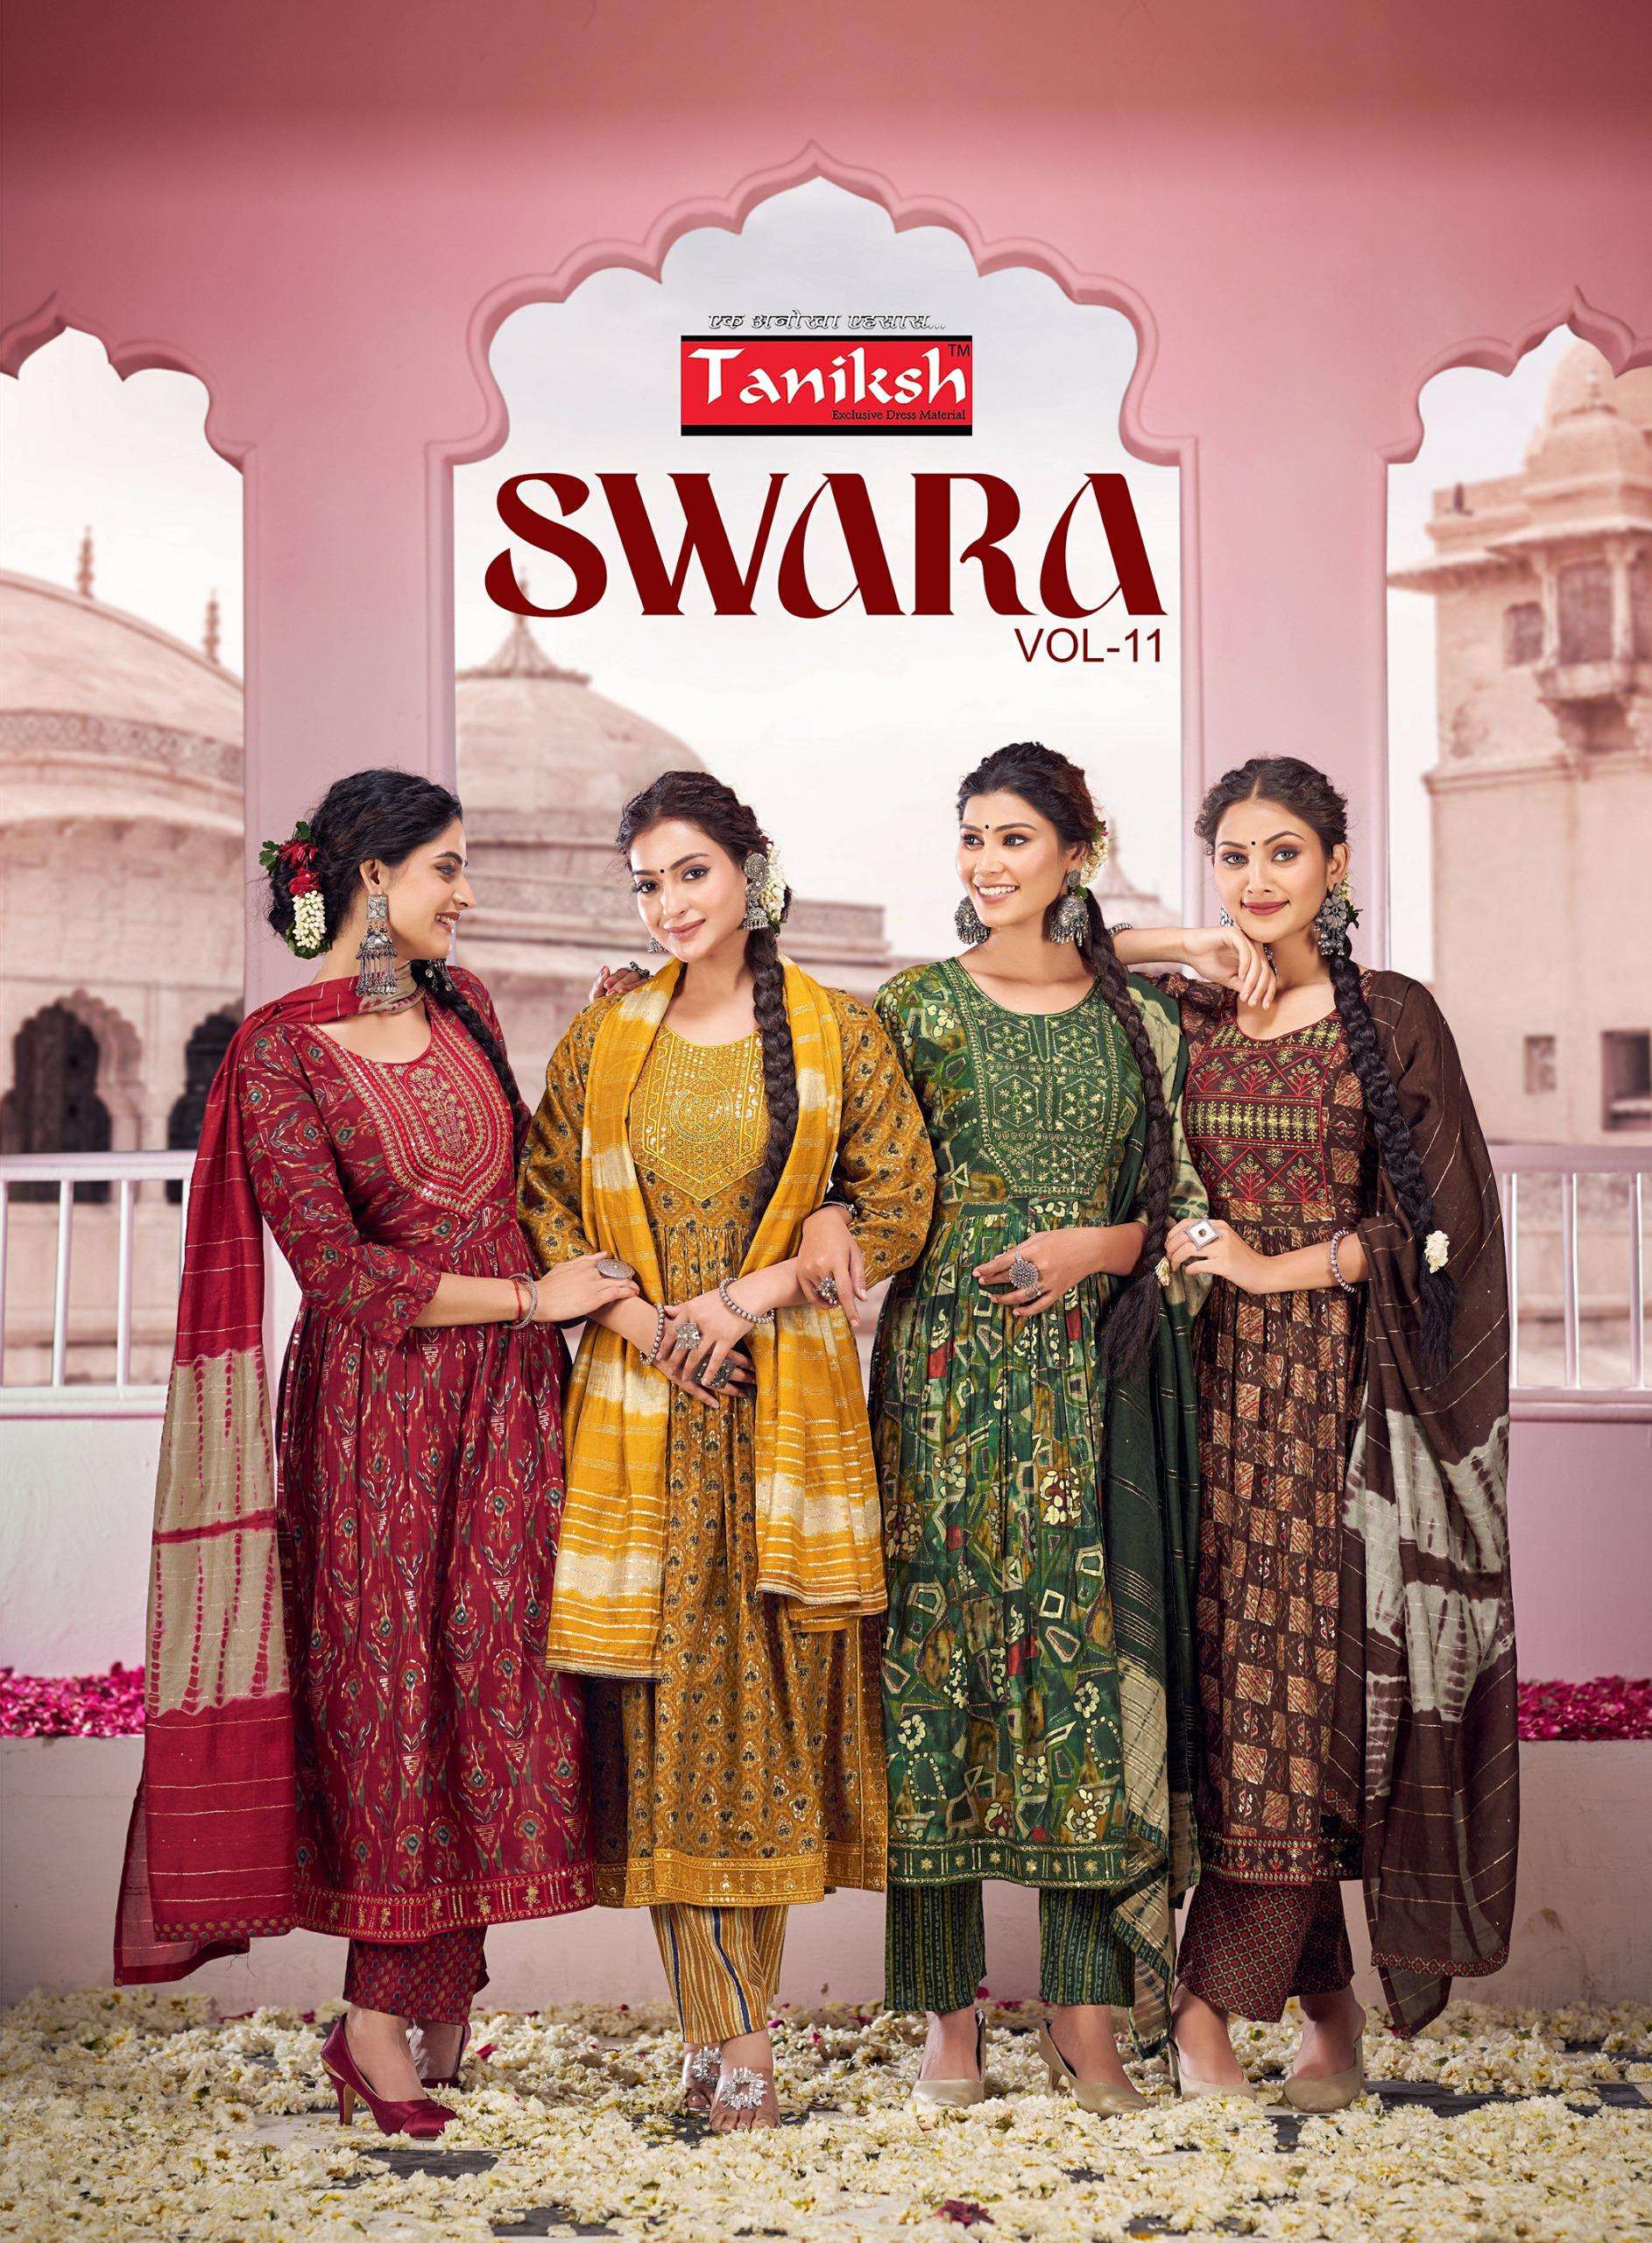 tanishk fashion swara vol-11 11001-11008 series nayra cut designer kurtis latest catalogue manufacturer surat gujrat 